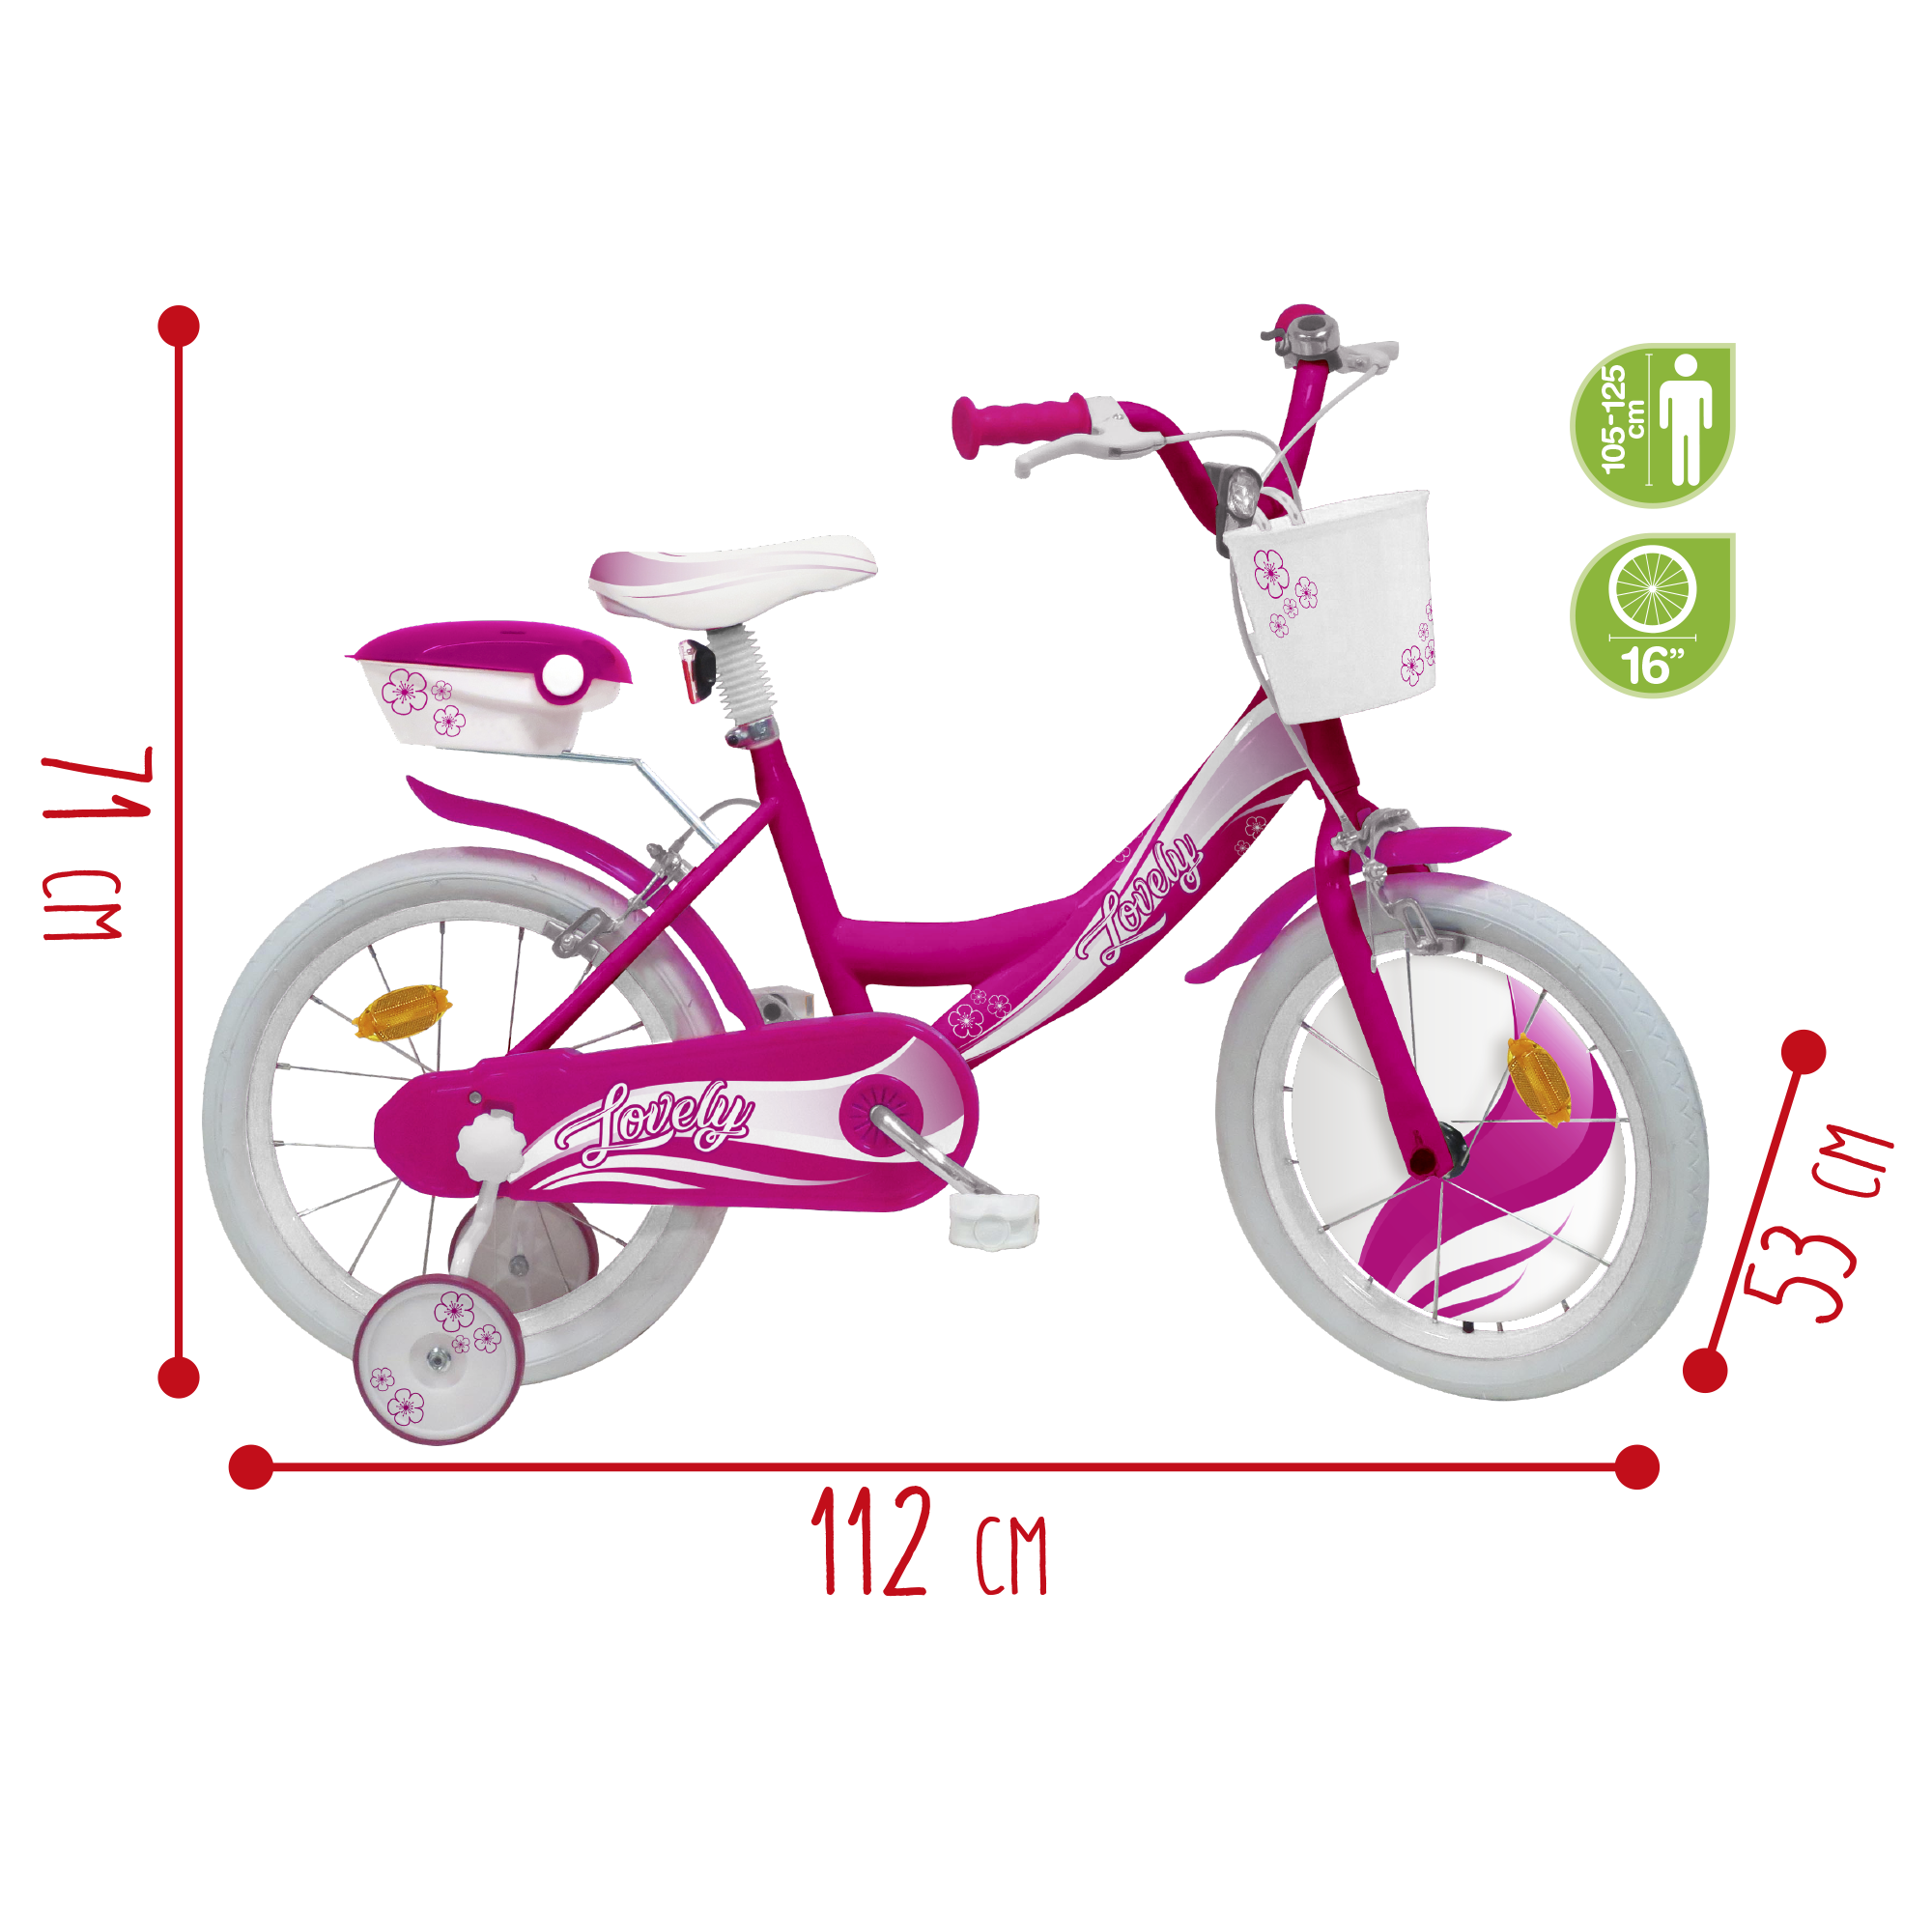 Bicicletta 16" - fucsia - 2 freni caliper - bauletto, cestello e disco colorato nella ruota anteriore inclusi - adatta per  bambini dai 8-12 anni - SUN&SPORT